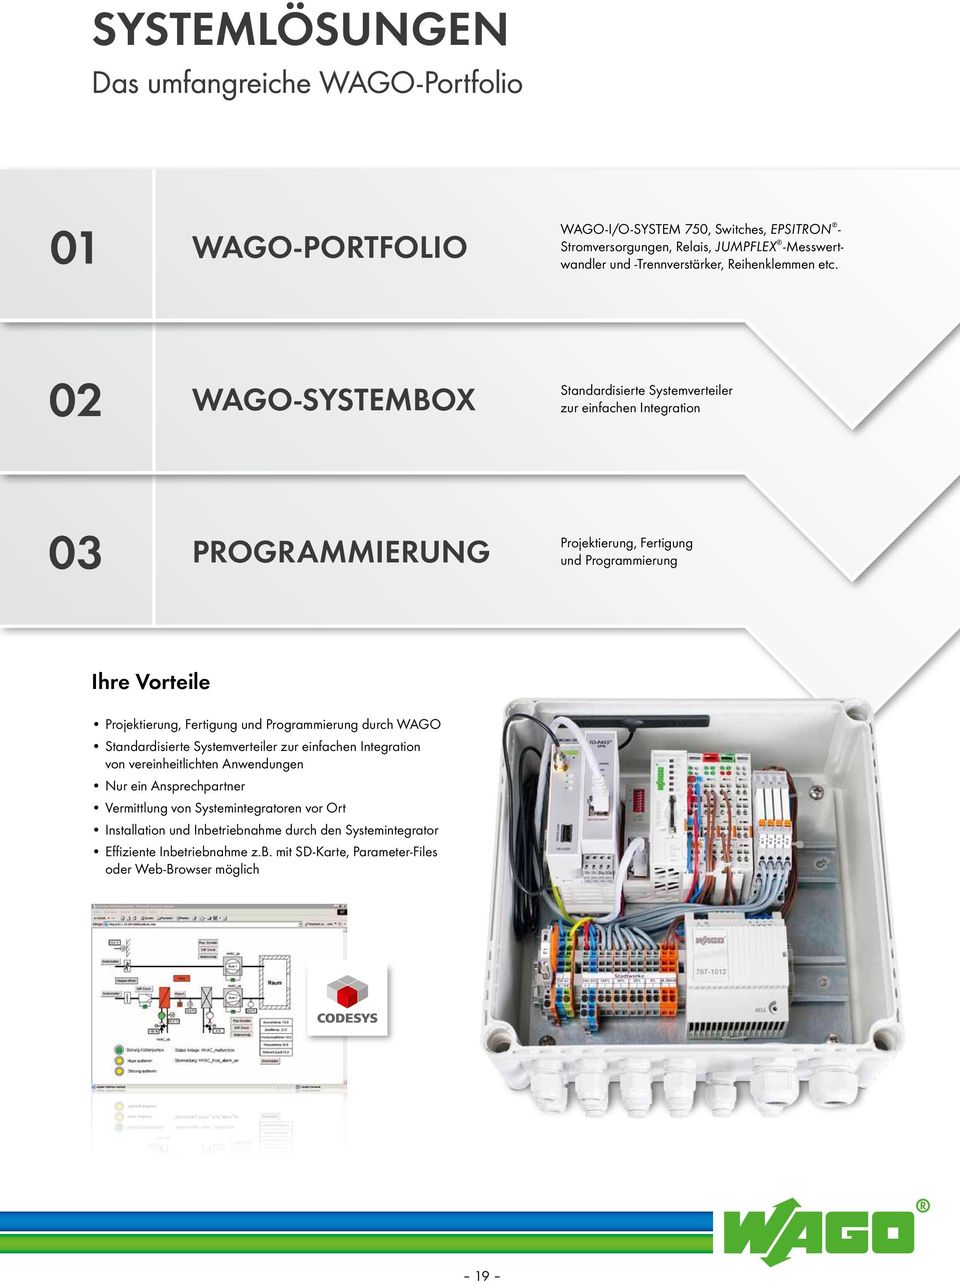 02 WAGO-SYSTEMBOX Standardisierte Systemverteiler zur einfachen Integration 03 PROGRAMMIERUNG Projektierung, Fertigung und Programmierung Ihre Vorteile Projektierung, Fertigung